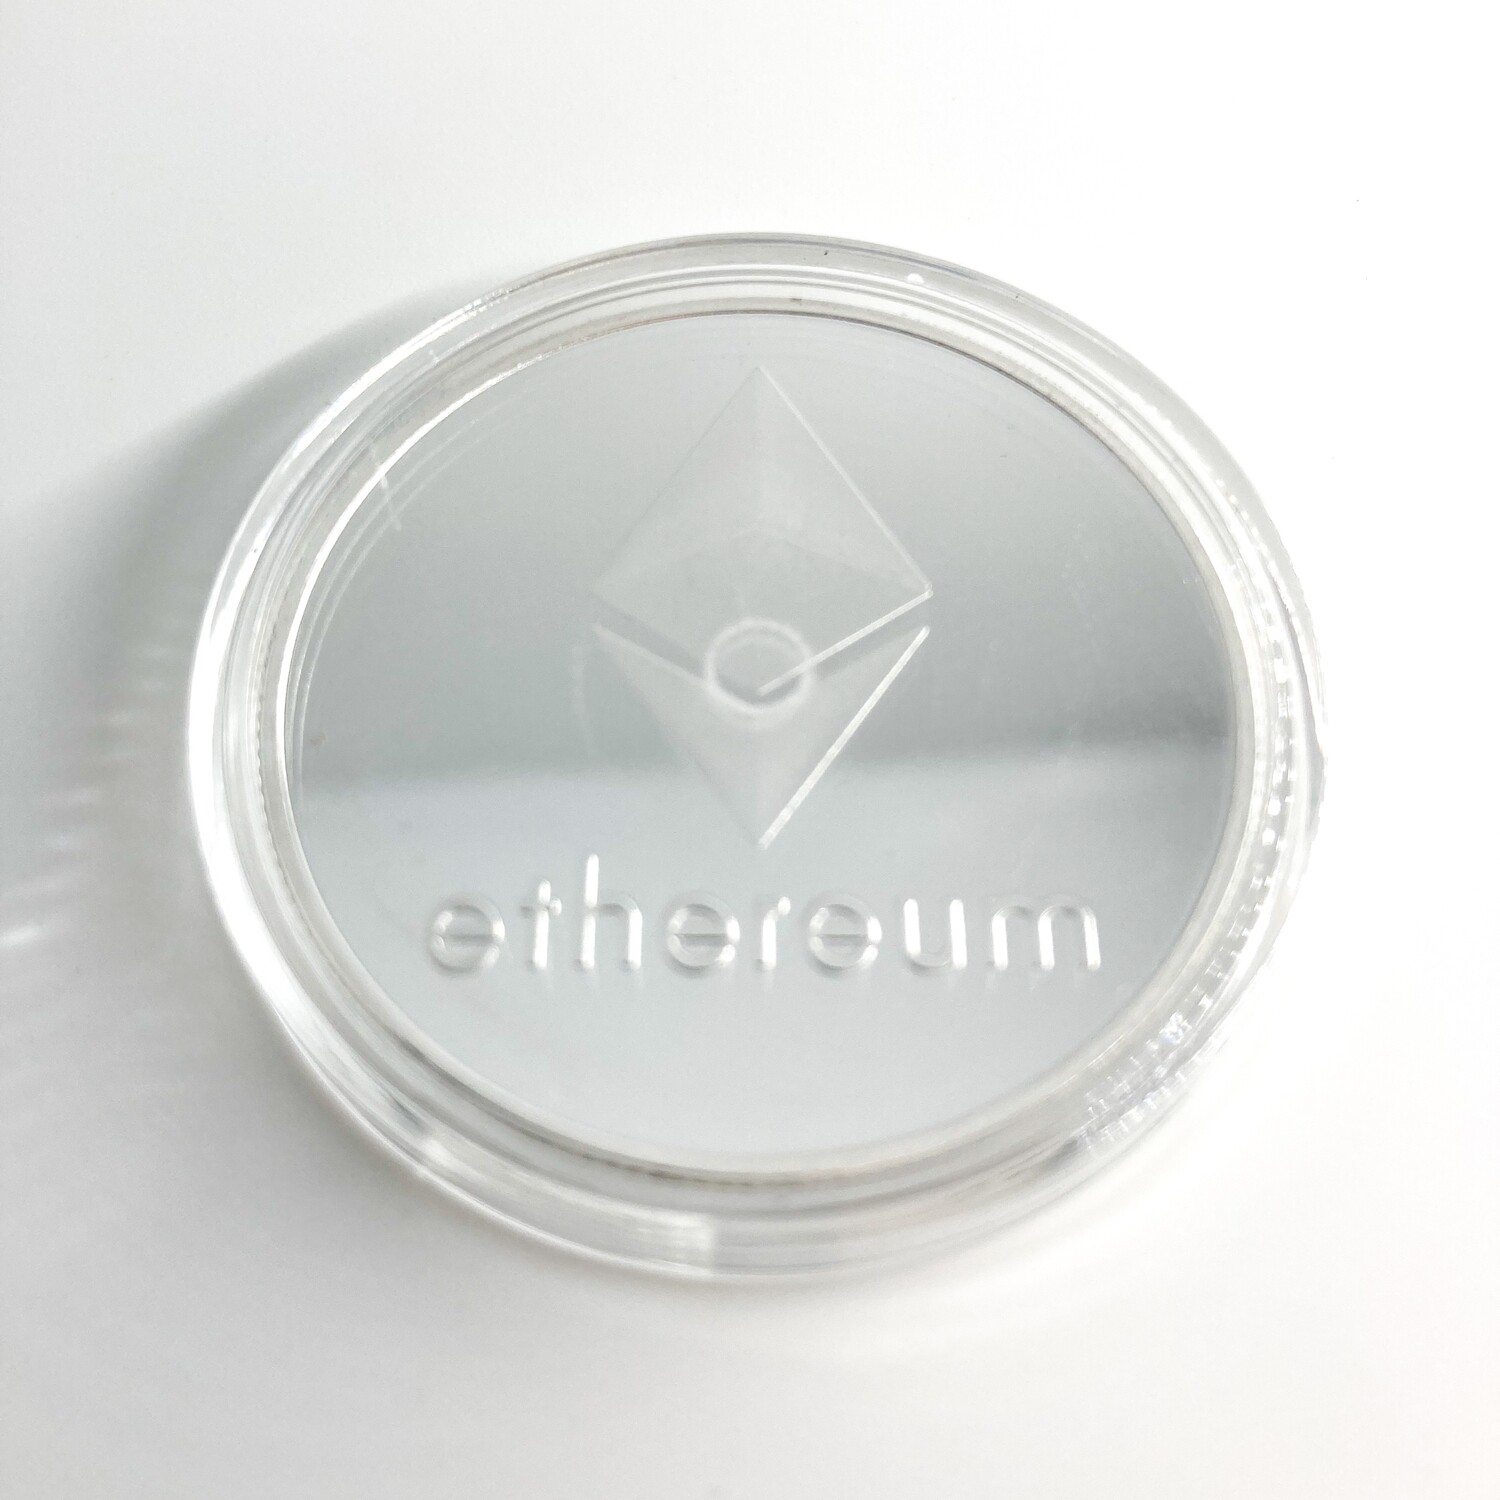 Ethereum - Gift Token